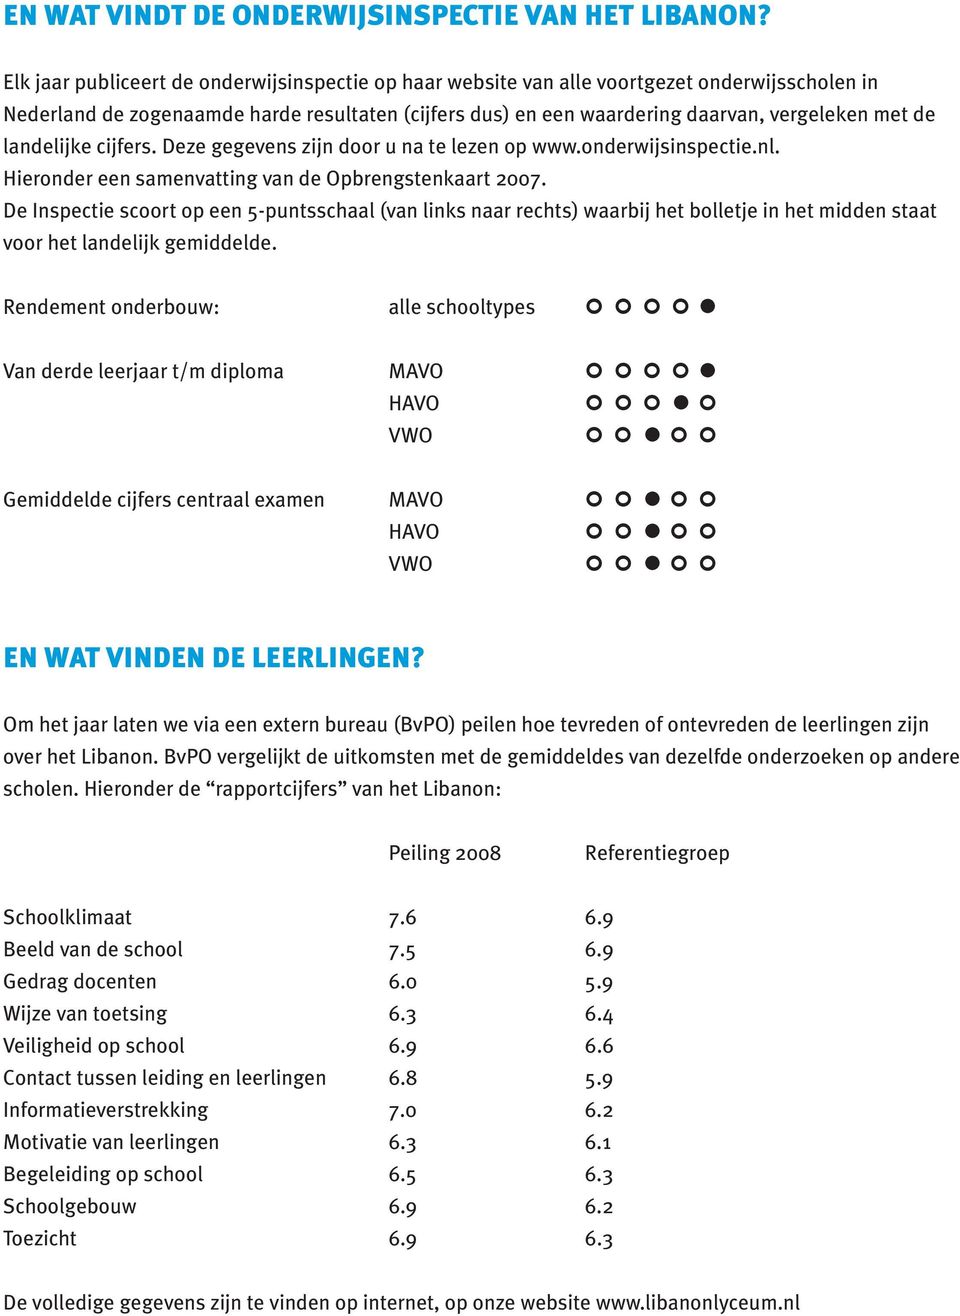 landelijke cijfers. Deze gegevens zijn door u na te lezen op www.onderwijsinspectie.nl. Hieronder een samenvatting van de Opbrengstenkaart 2007.